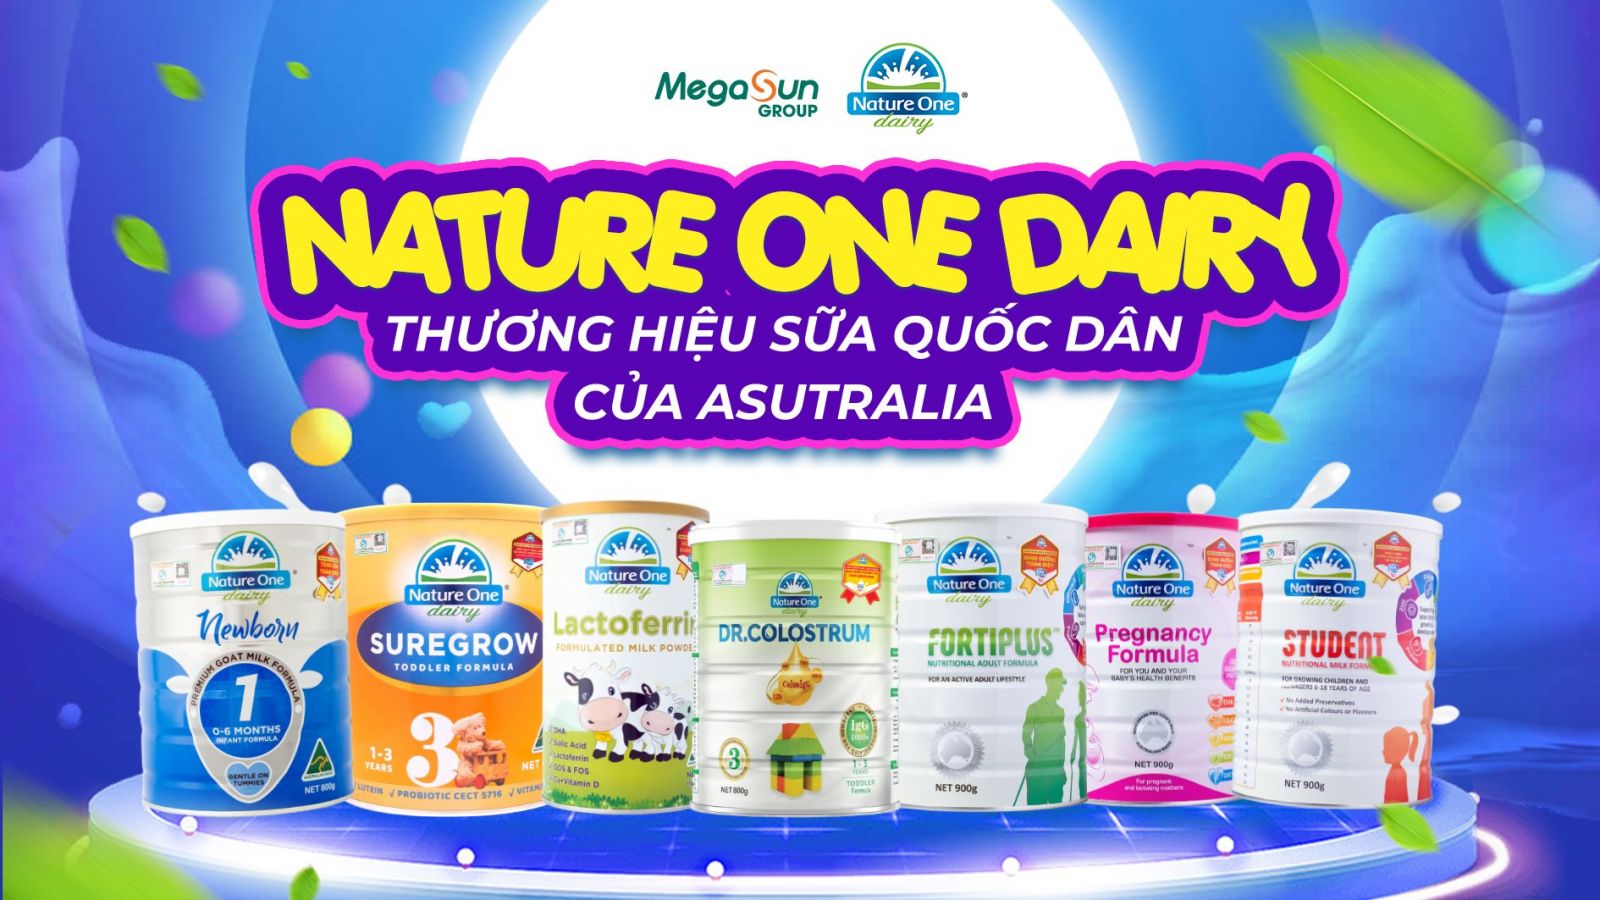 Nature One Dairy - Thương hiệu sữa quốc dân tại Úc